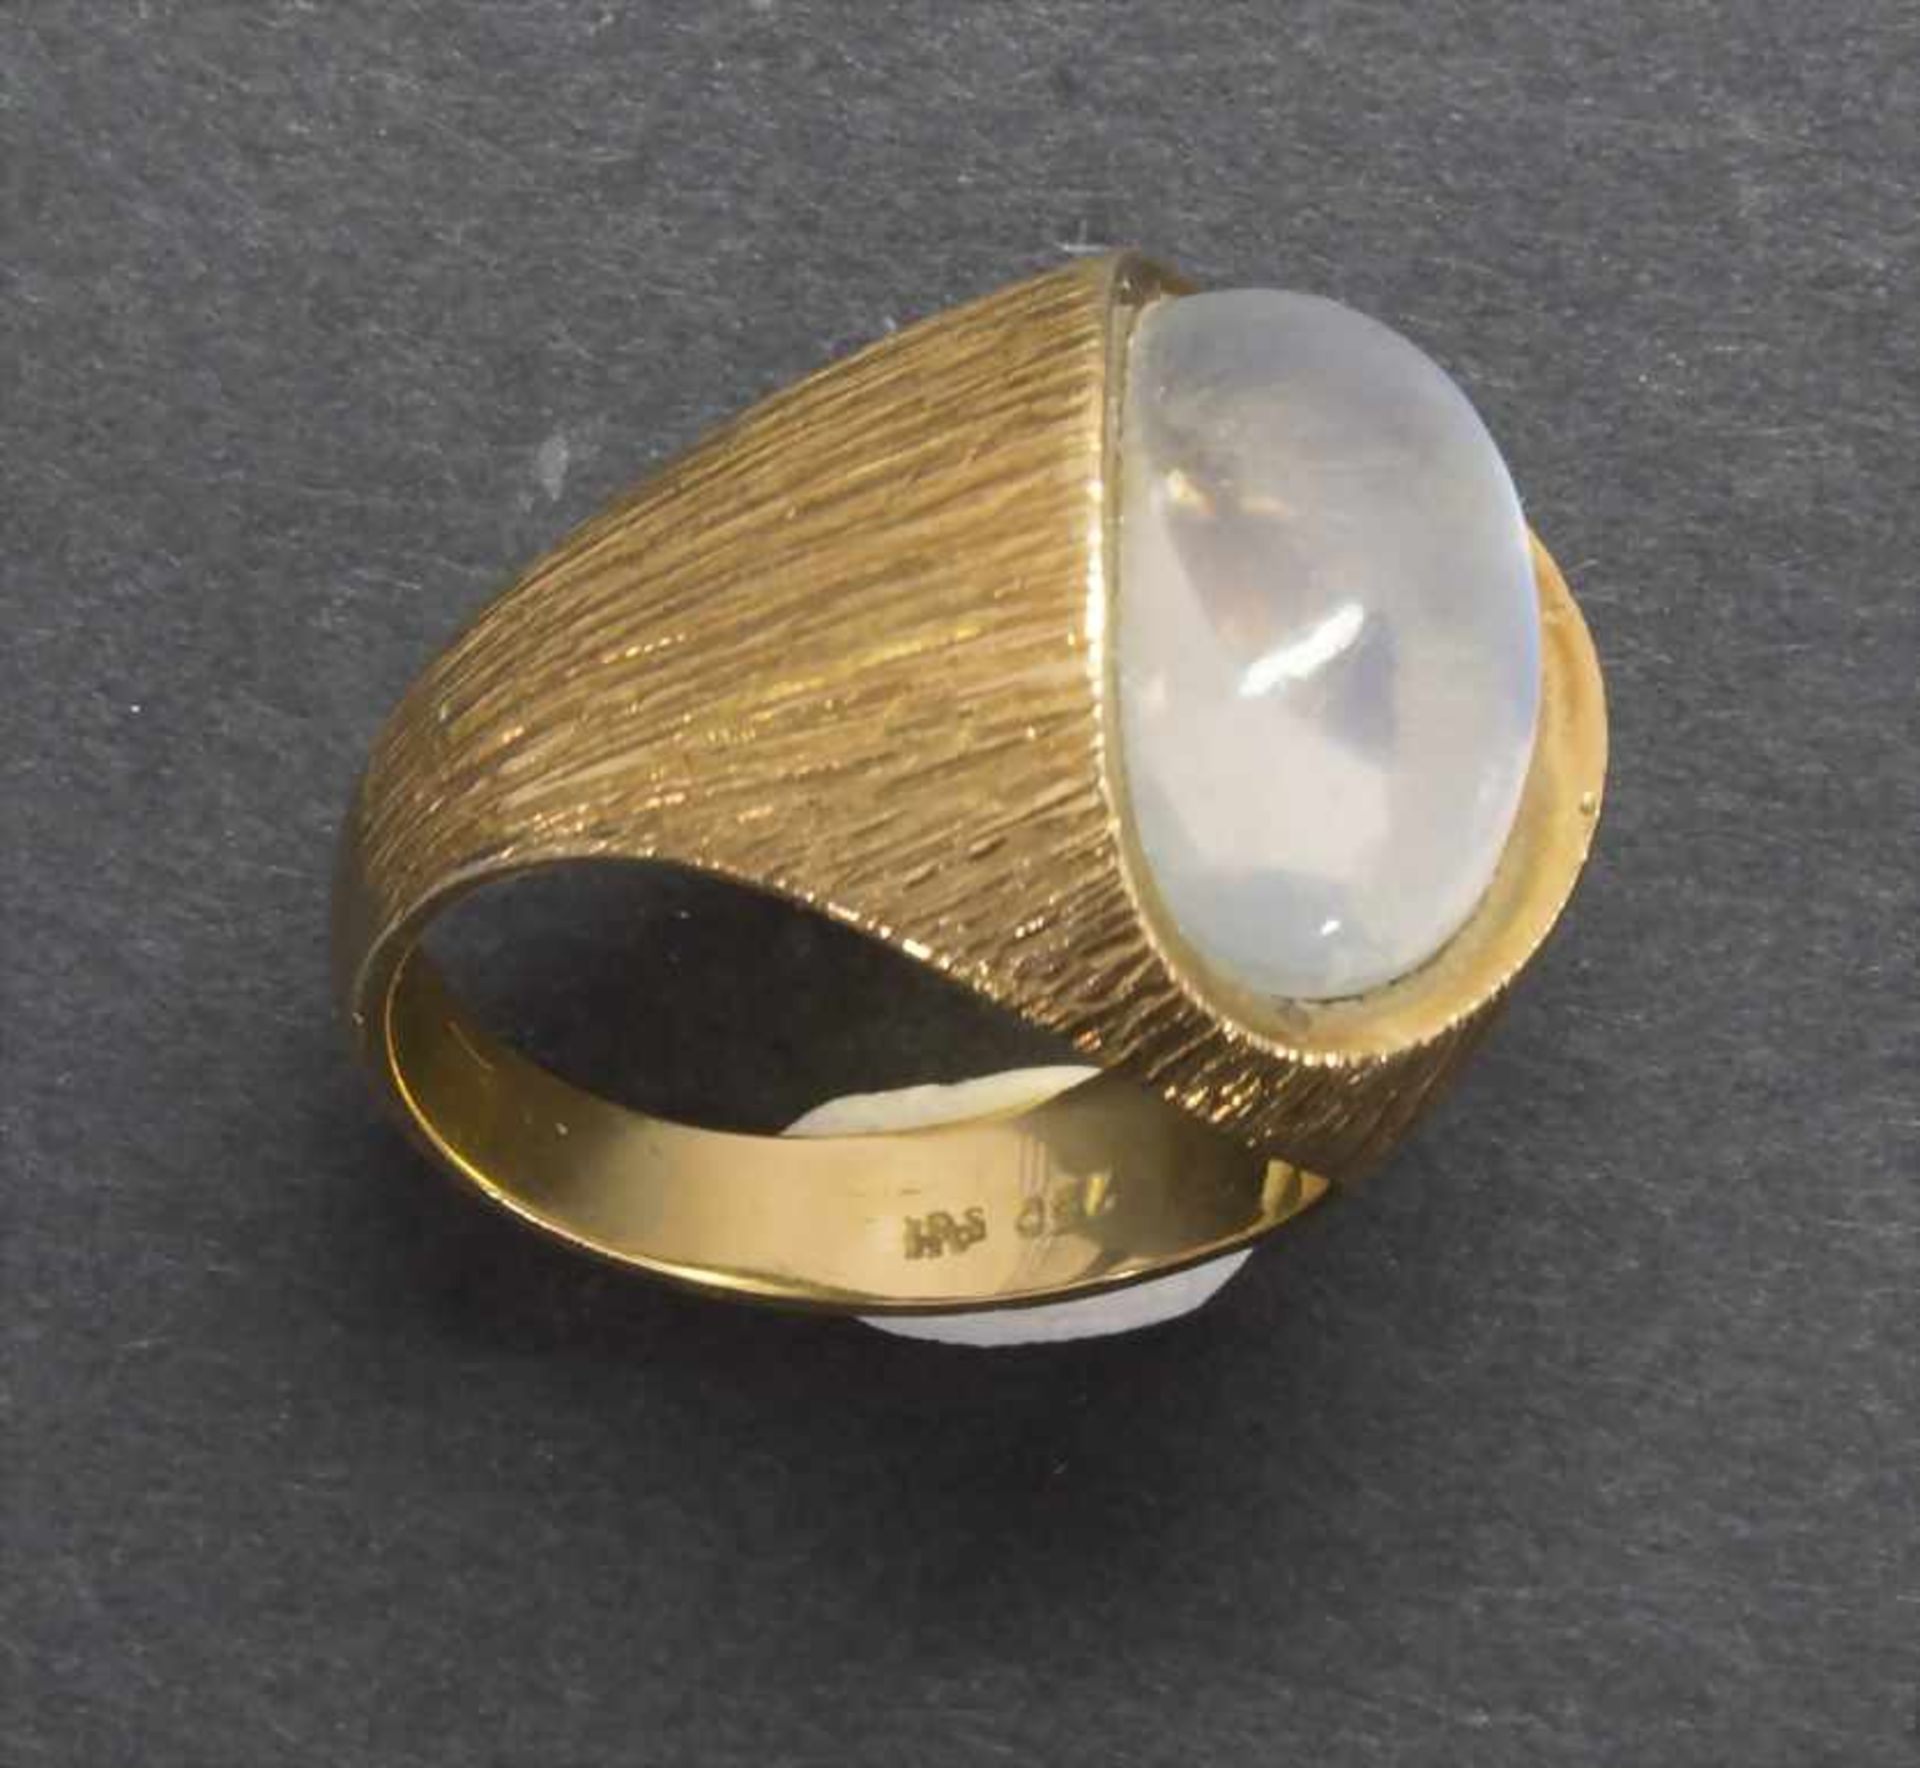 Damenring mit Mondstein / A ladies ring with moonstoneMaterial: Gelbgold 750/000 18 Kt, Mondstein, - Image 3 of 4